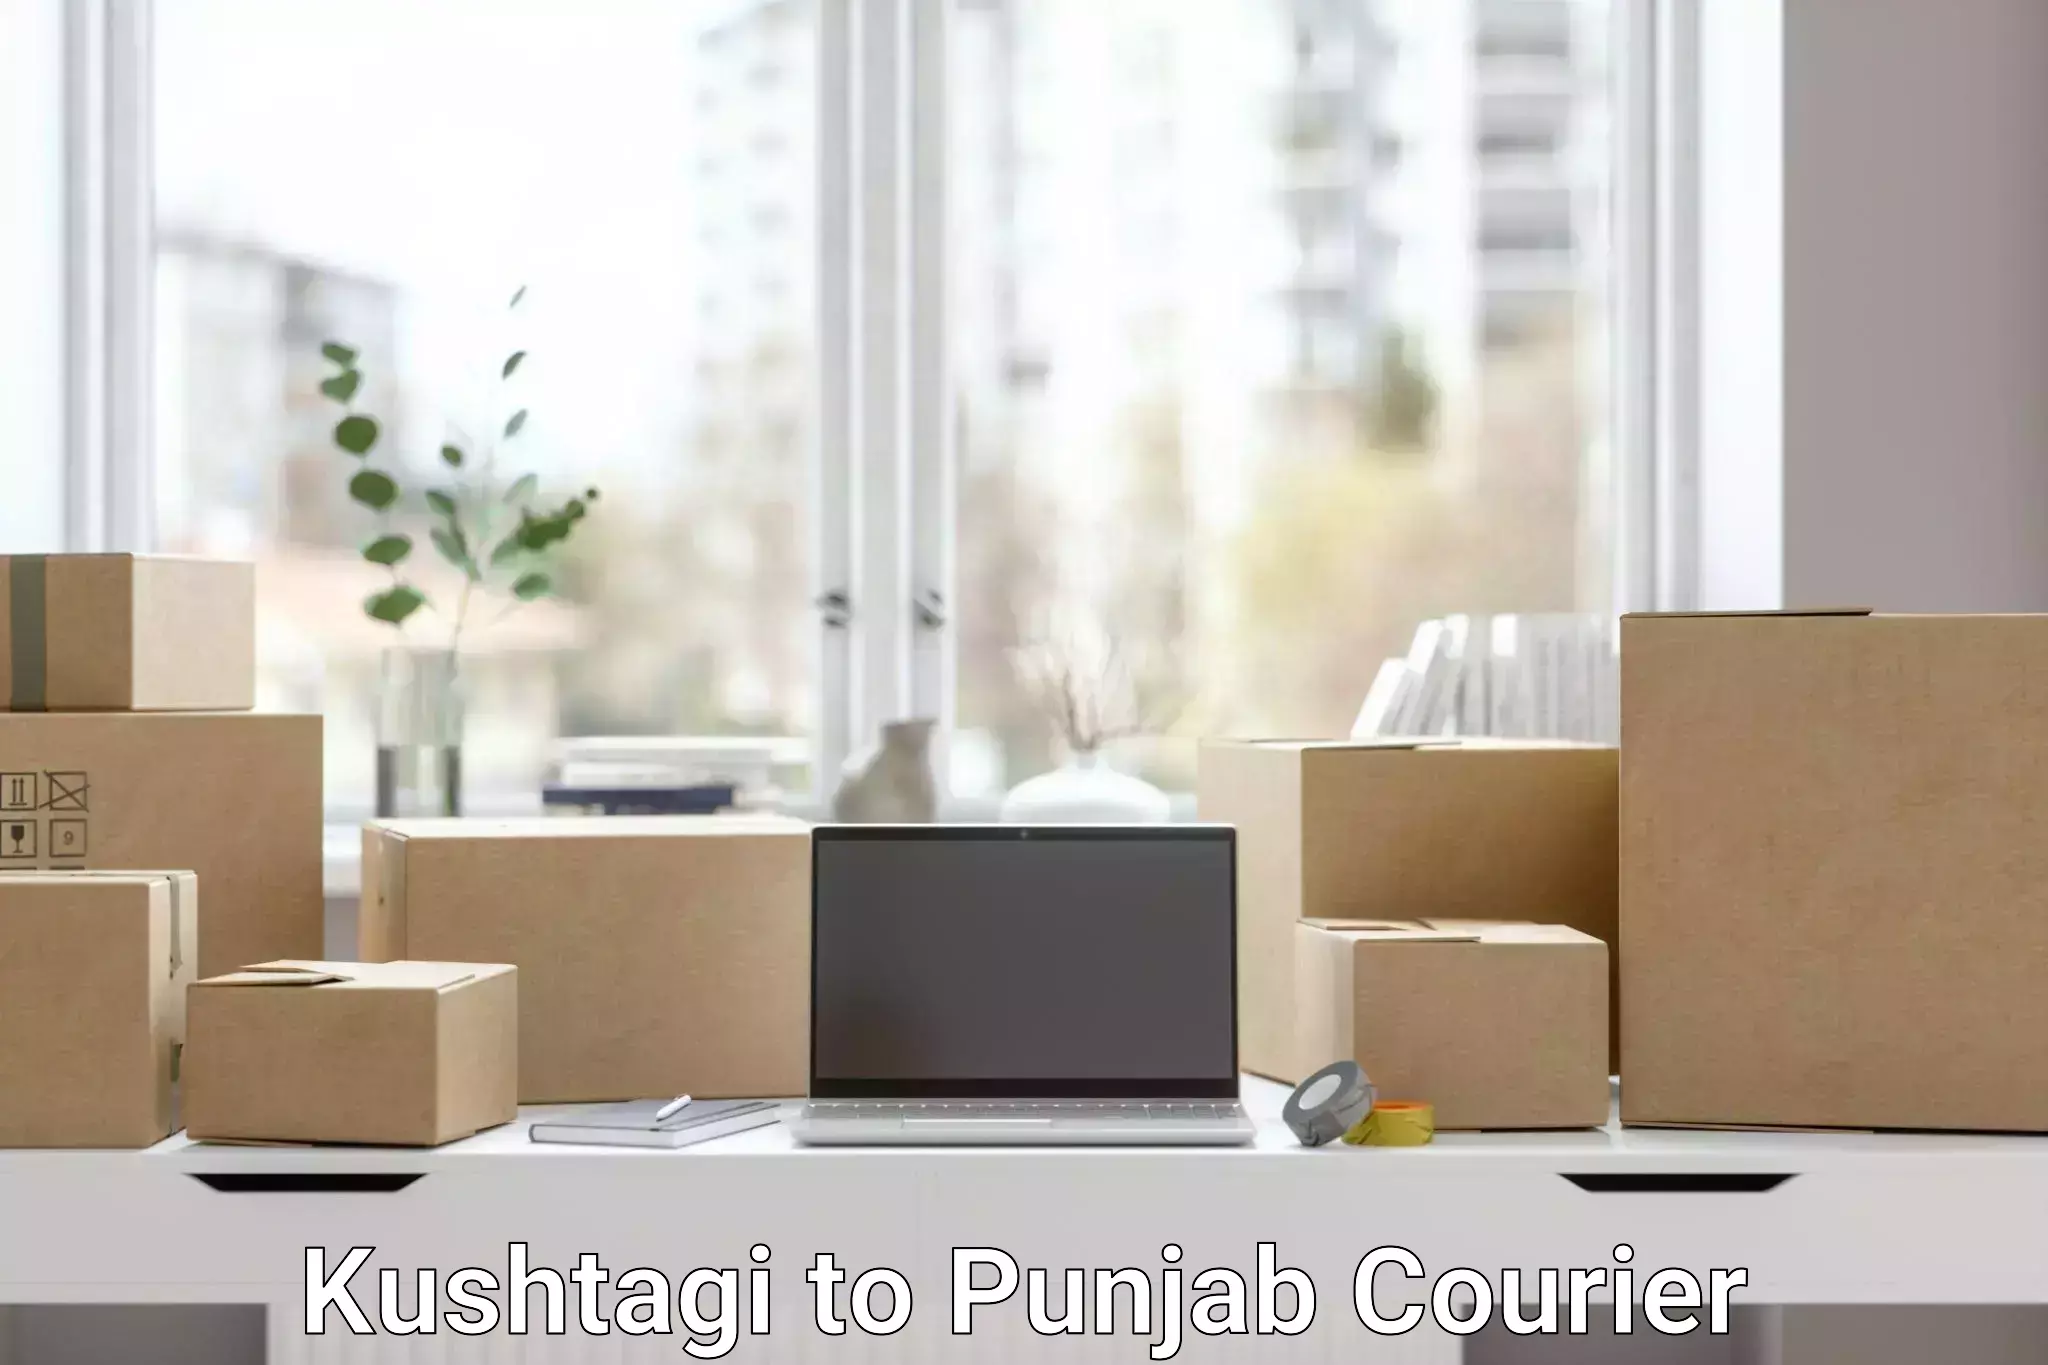 Expedited shipping methods Kushtagi to Punjab